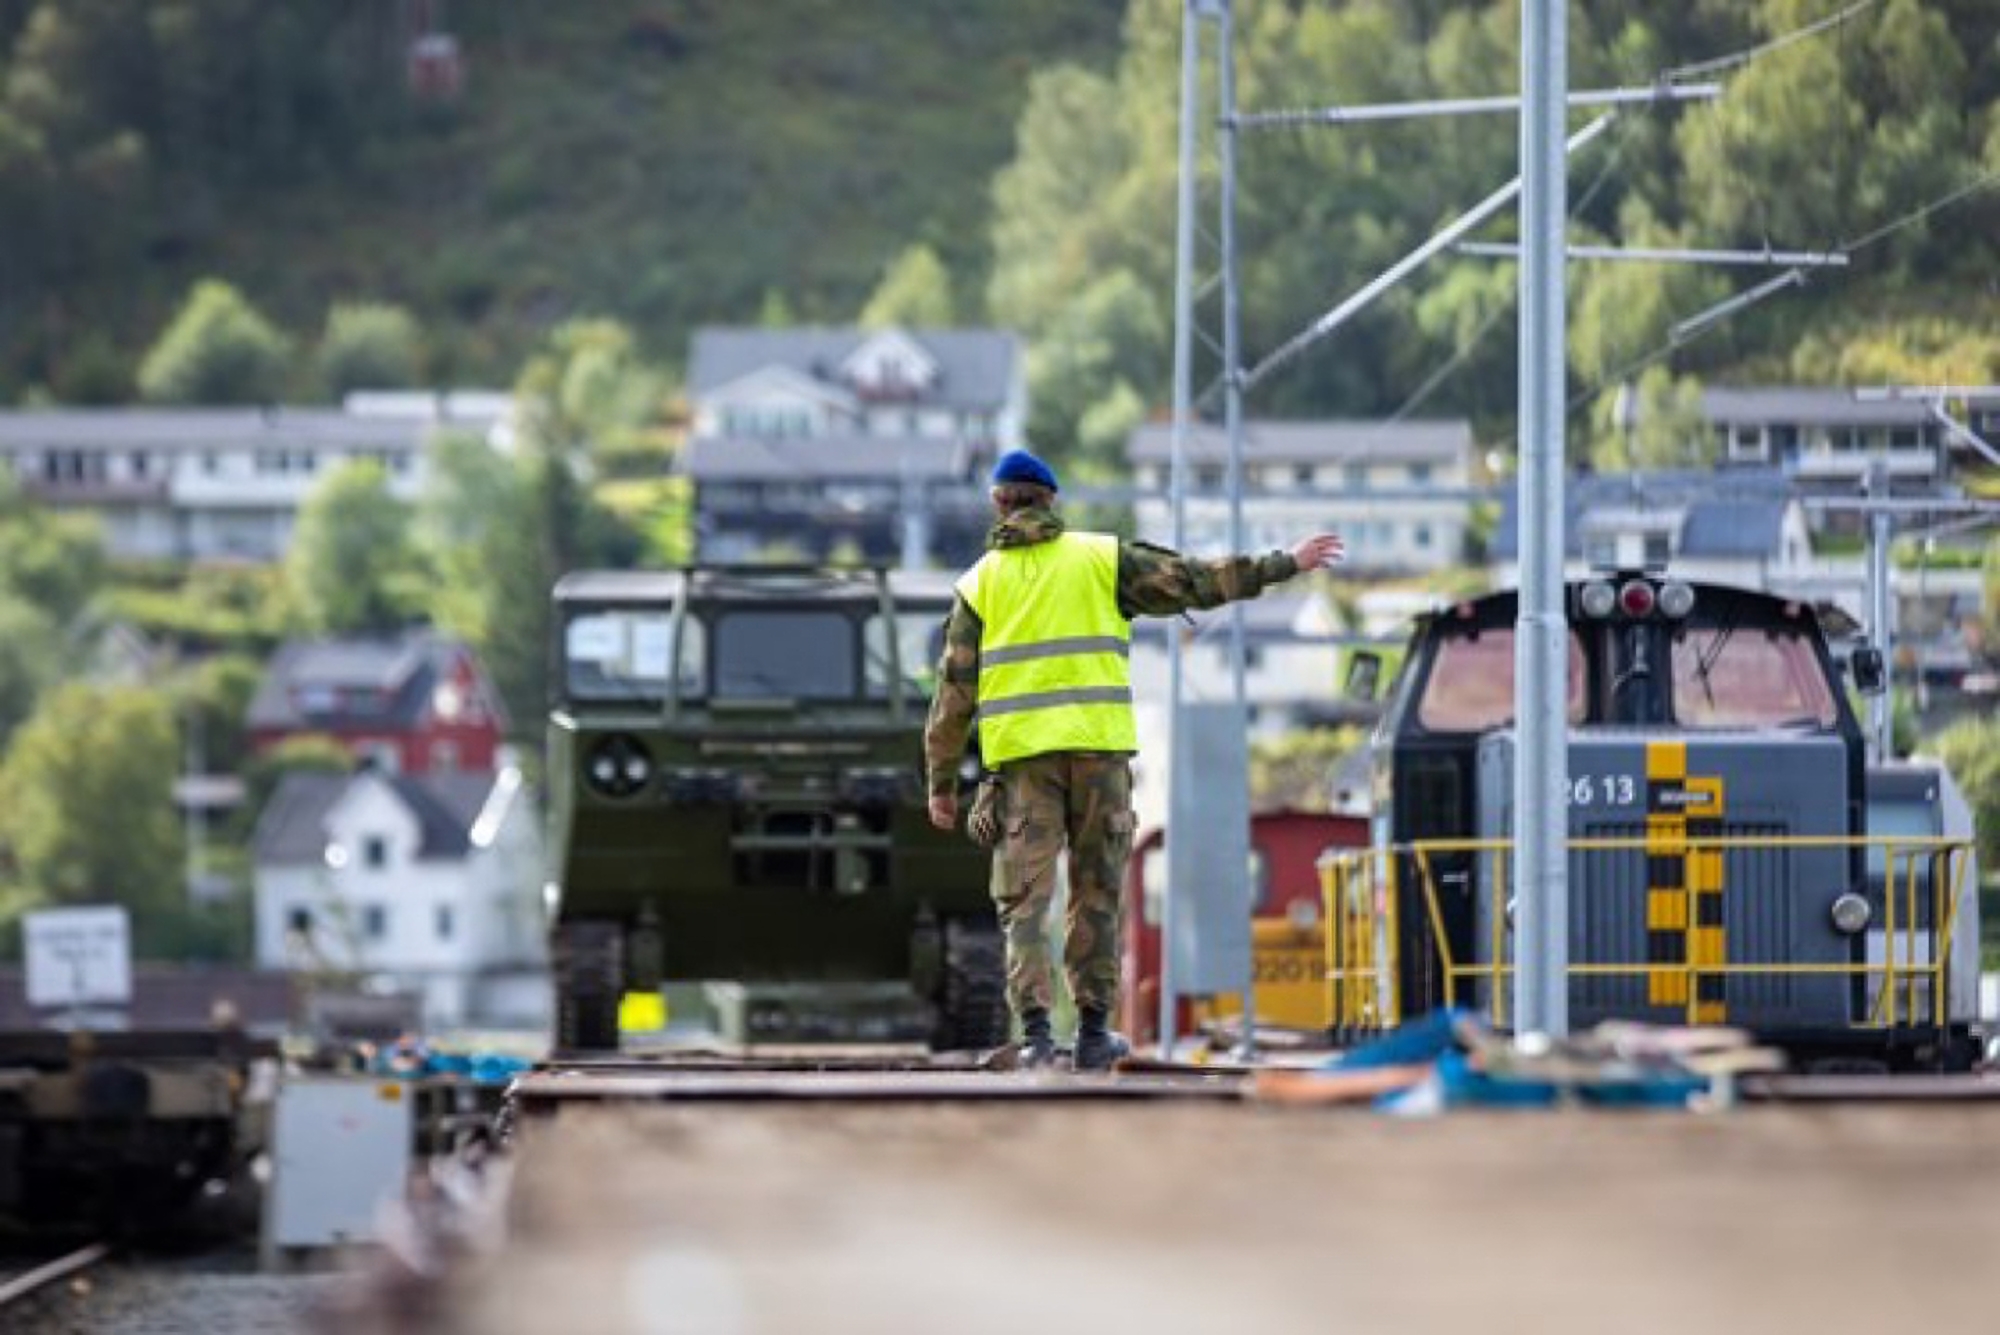 Noorwegen draagt 50 M548 rupstransporters over aan de AFU, ze zijn gebaseerd op de M113 APC.-2